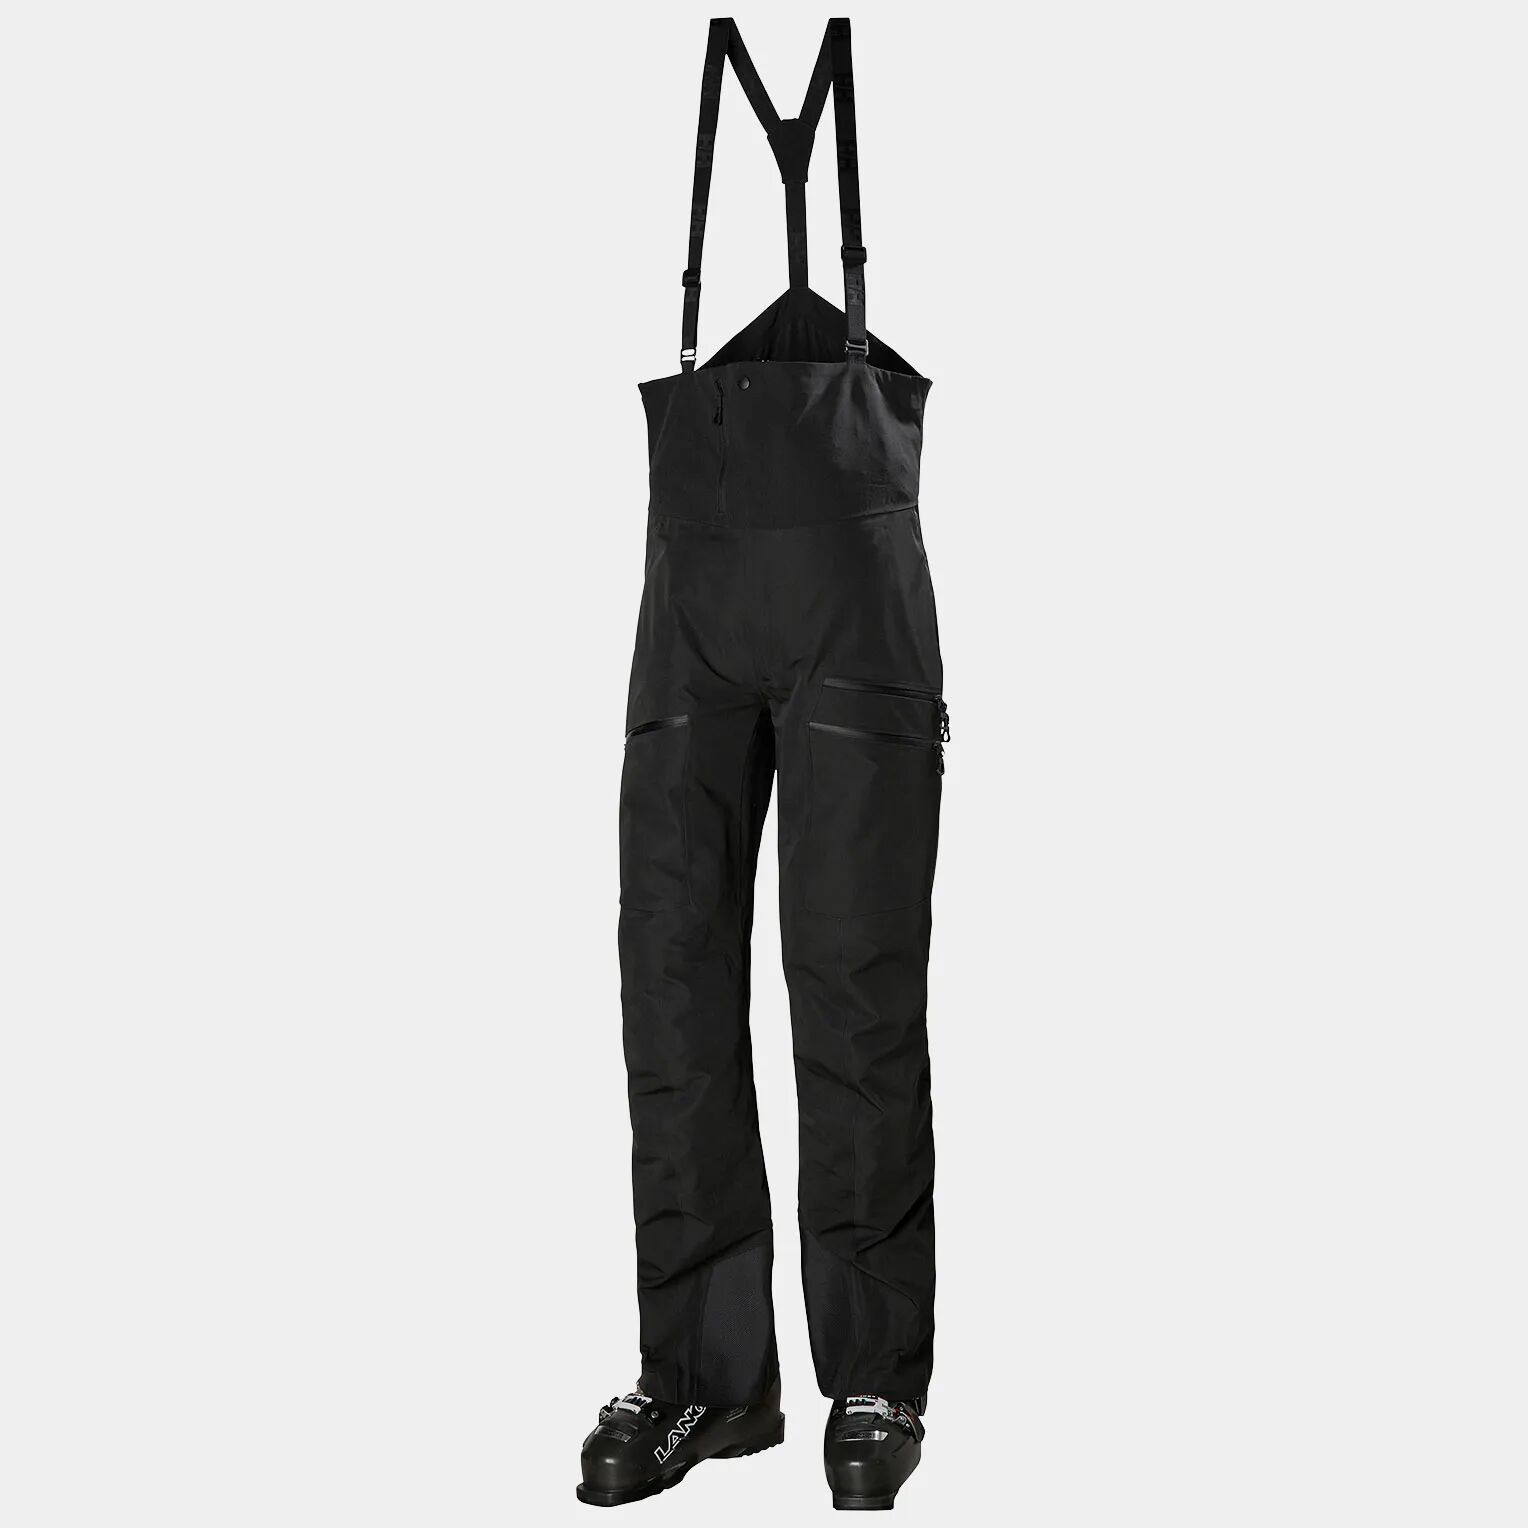 Helly Hansen Men's Odin Mountain Infinity 3 Layer Bib Ski Trousers Black XL - Black - Male